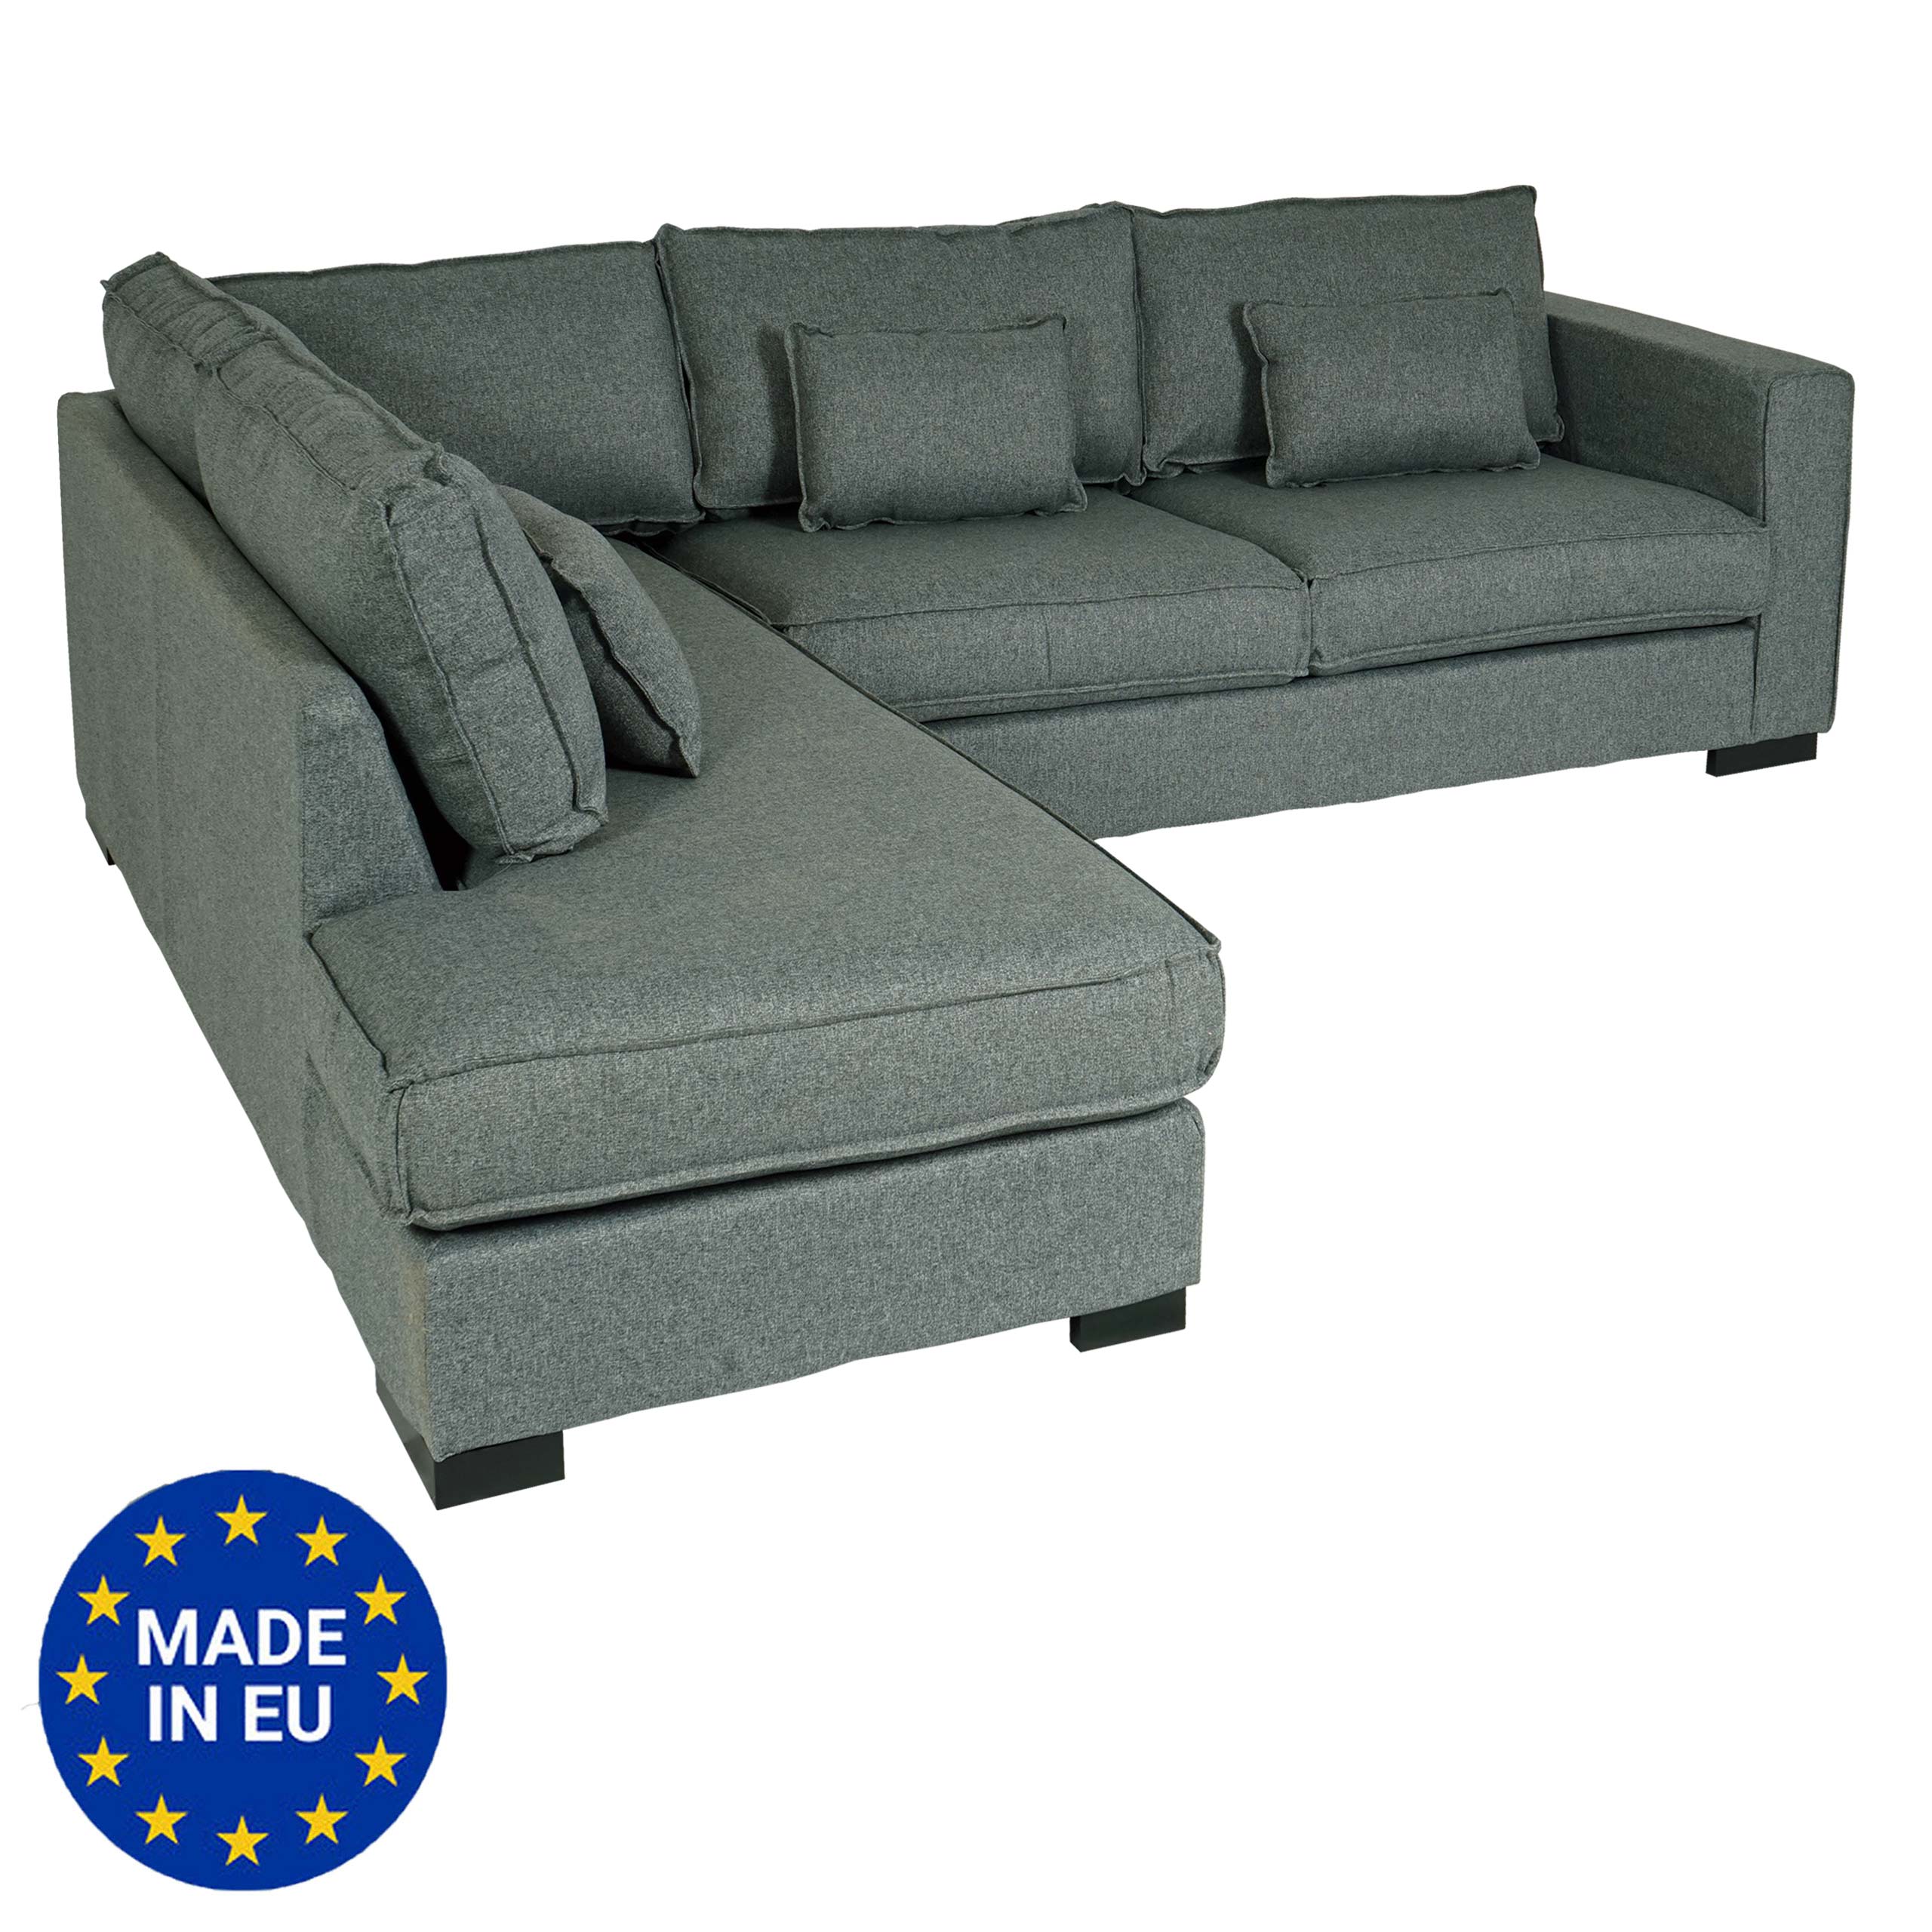 Ecksofa HWC-J58, Couch Sofa mit Ottomane links, Made in EU, wasserabweisend  ~ Stoff/Textil grau von Heute-Wohnen